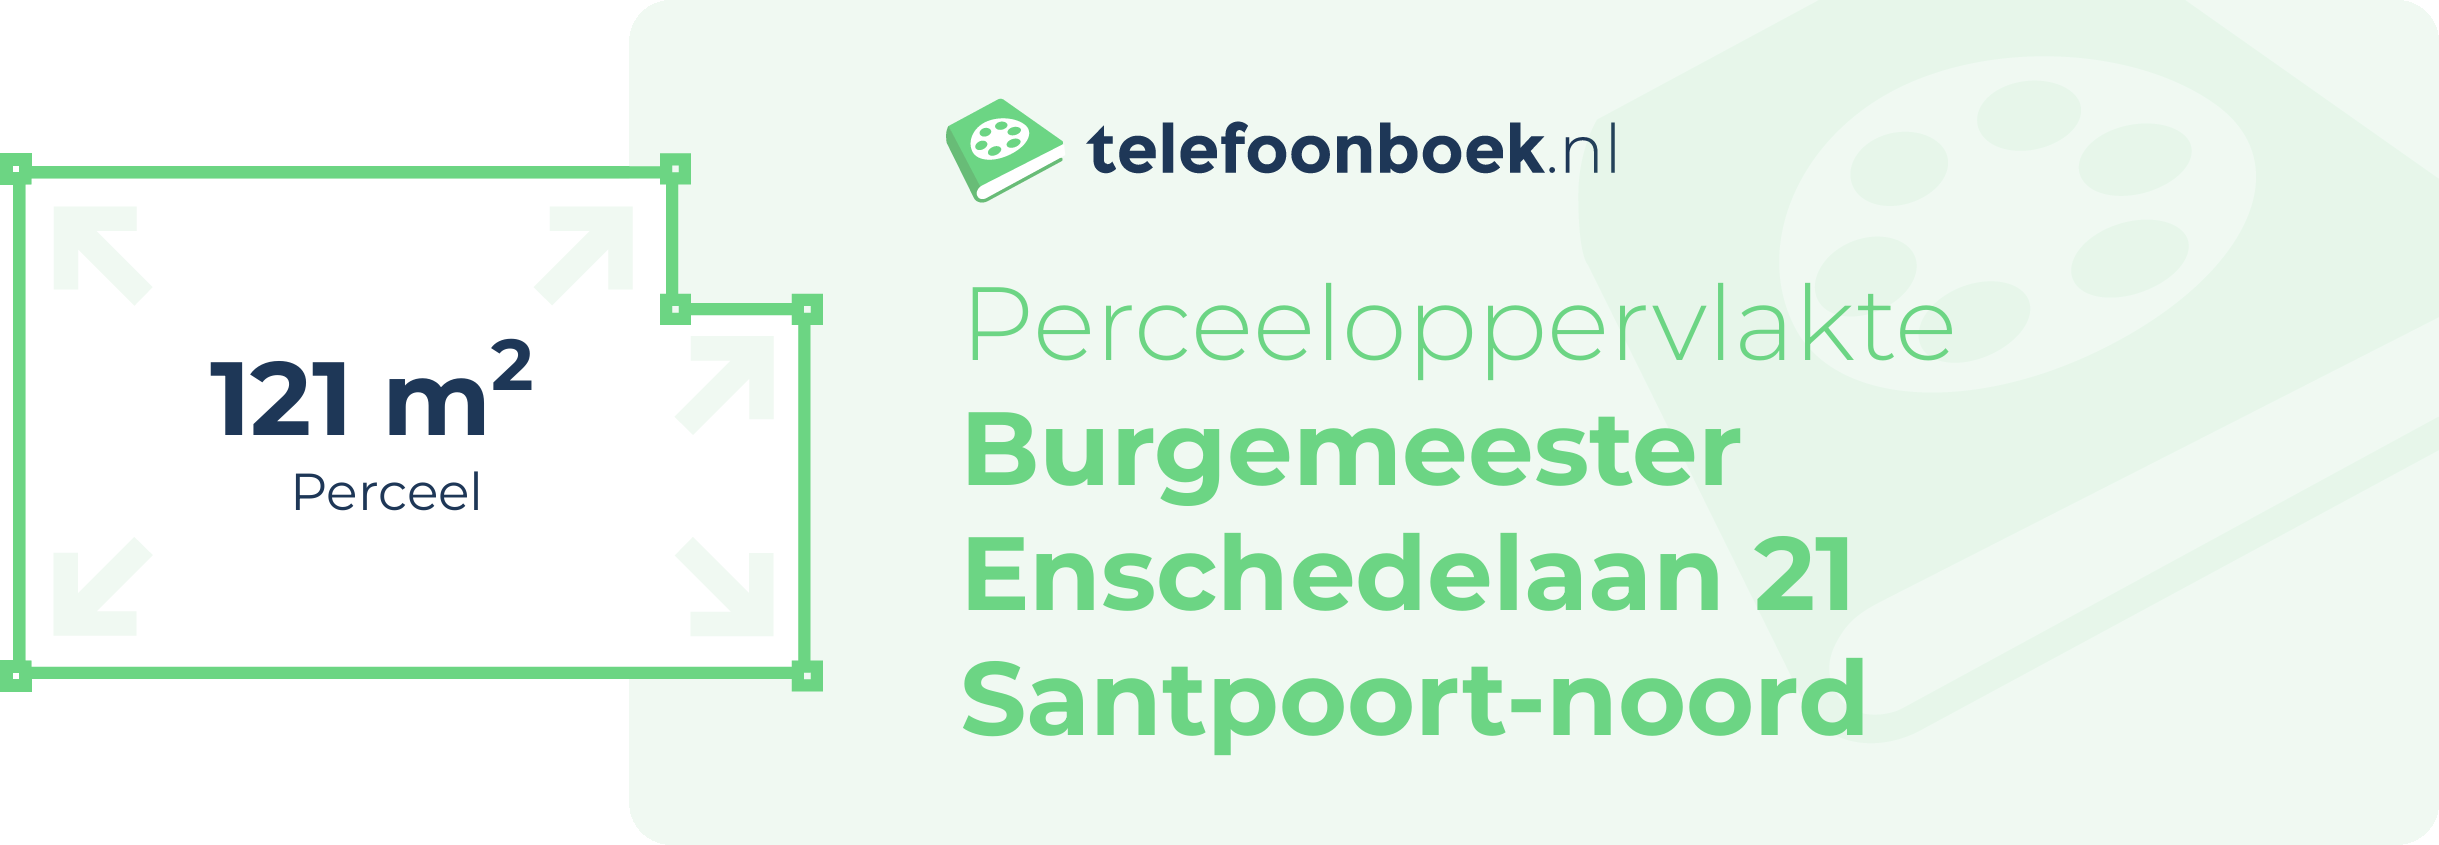 Perceeloppervlakte Burgemeester Enschedelaan 21 Santpoort-Noord